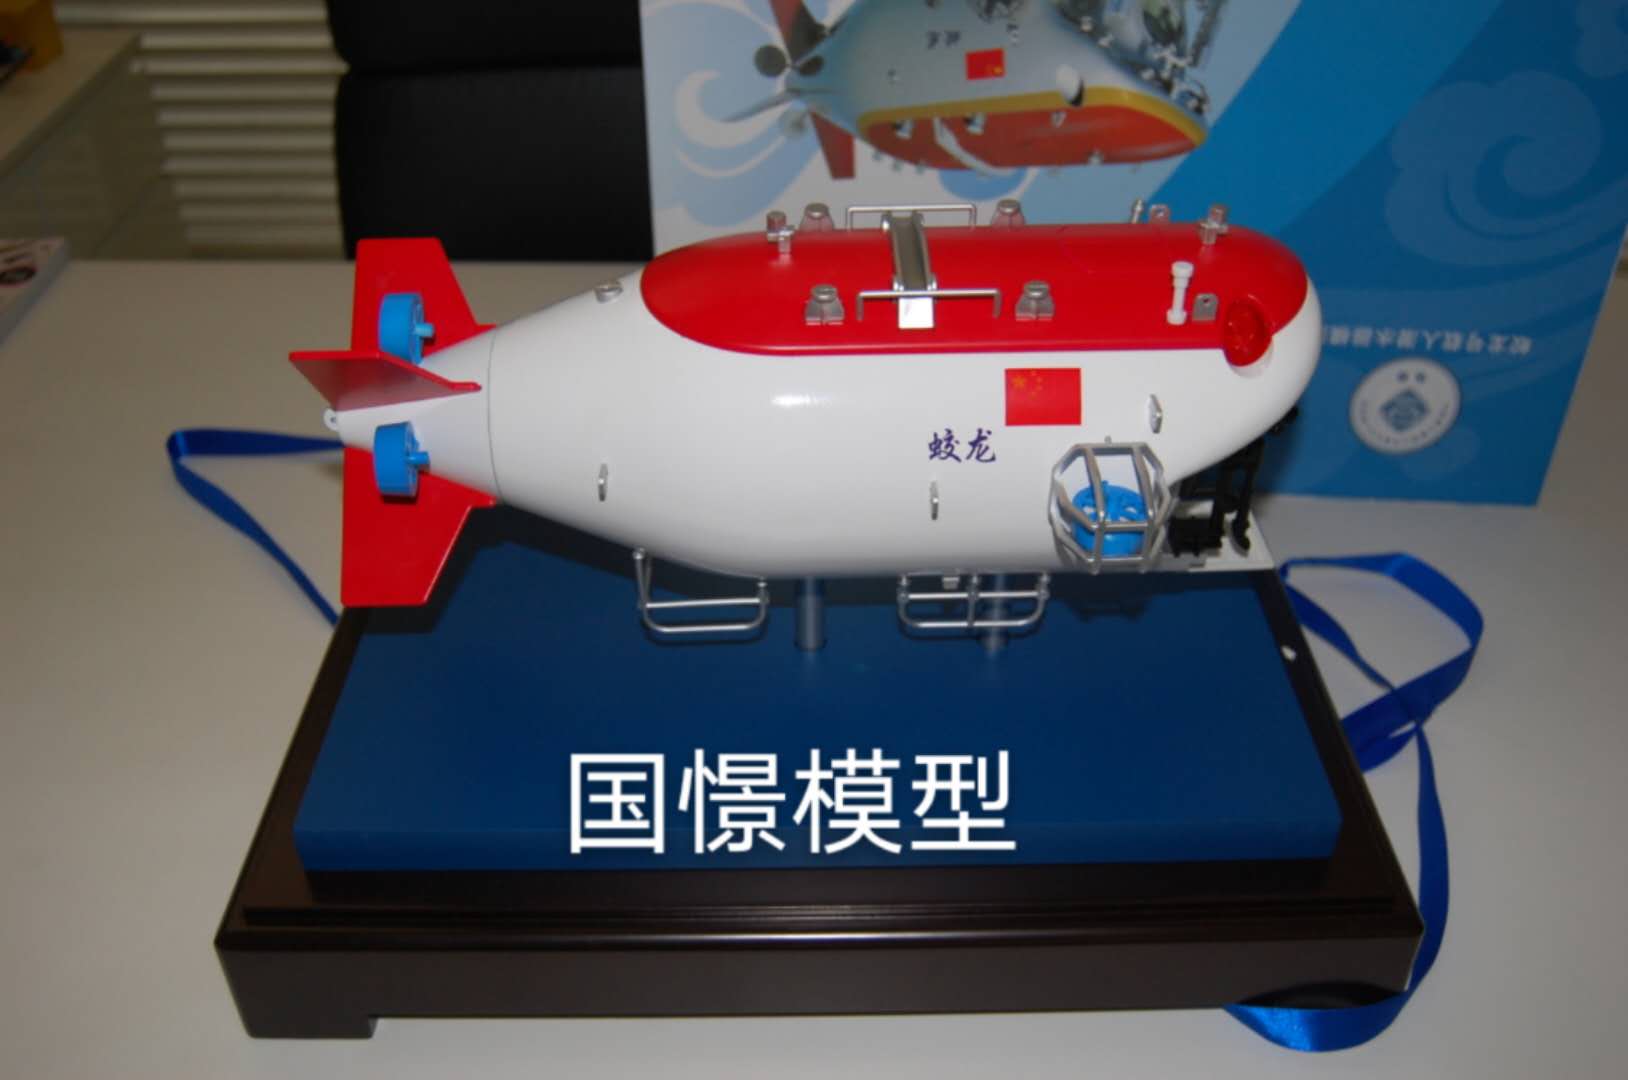 灵寿县船舶模型